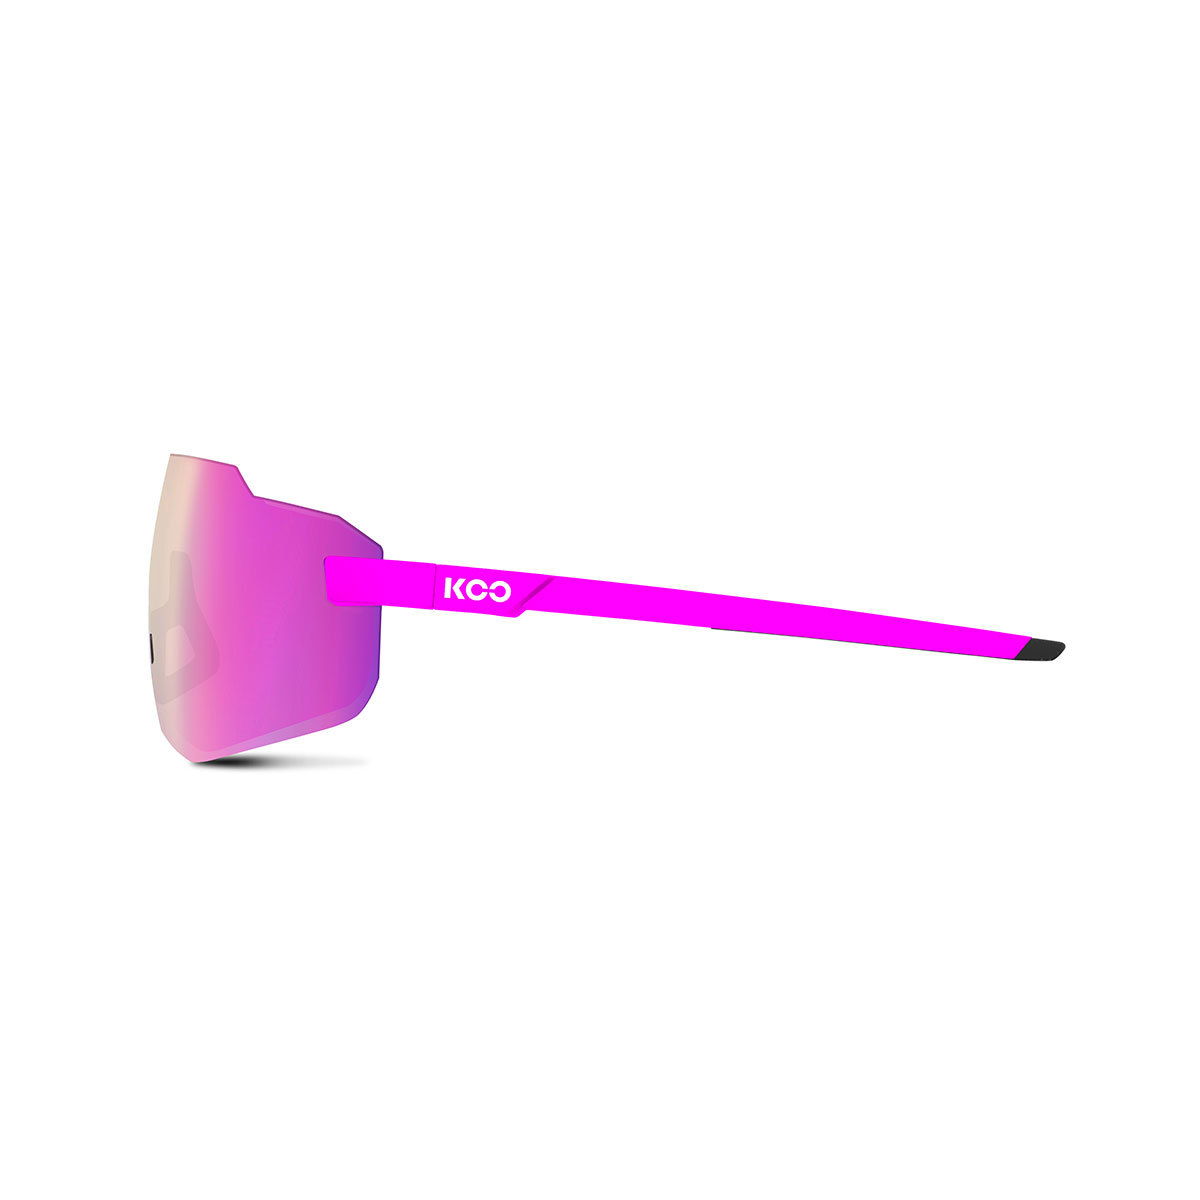 KOO SUPERNOVA Sport Zonnebril Paars met Pink Mirror Lens